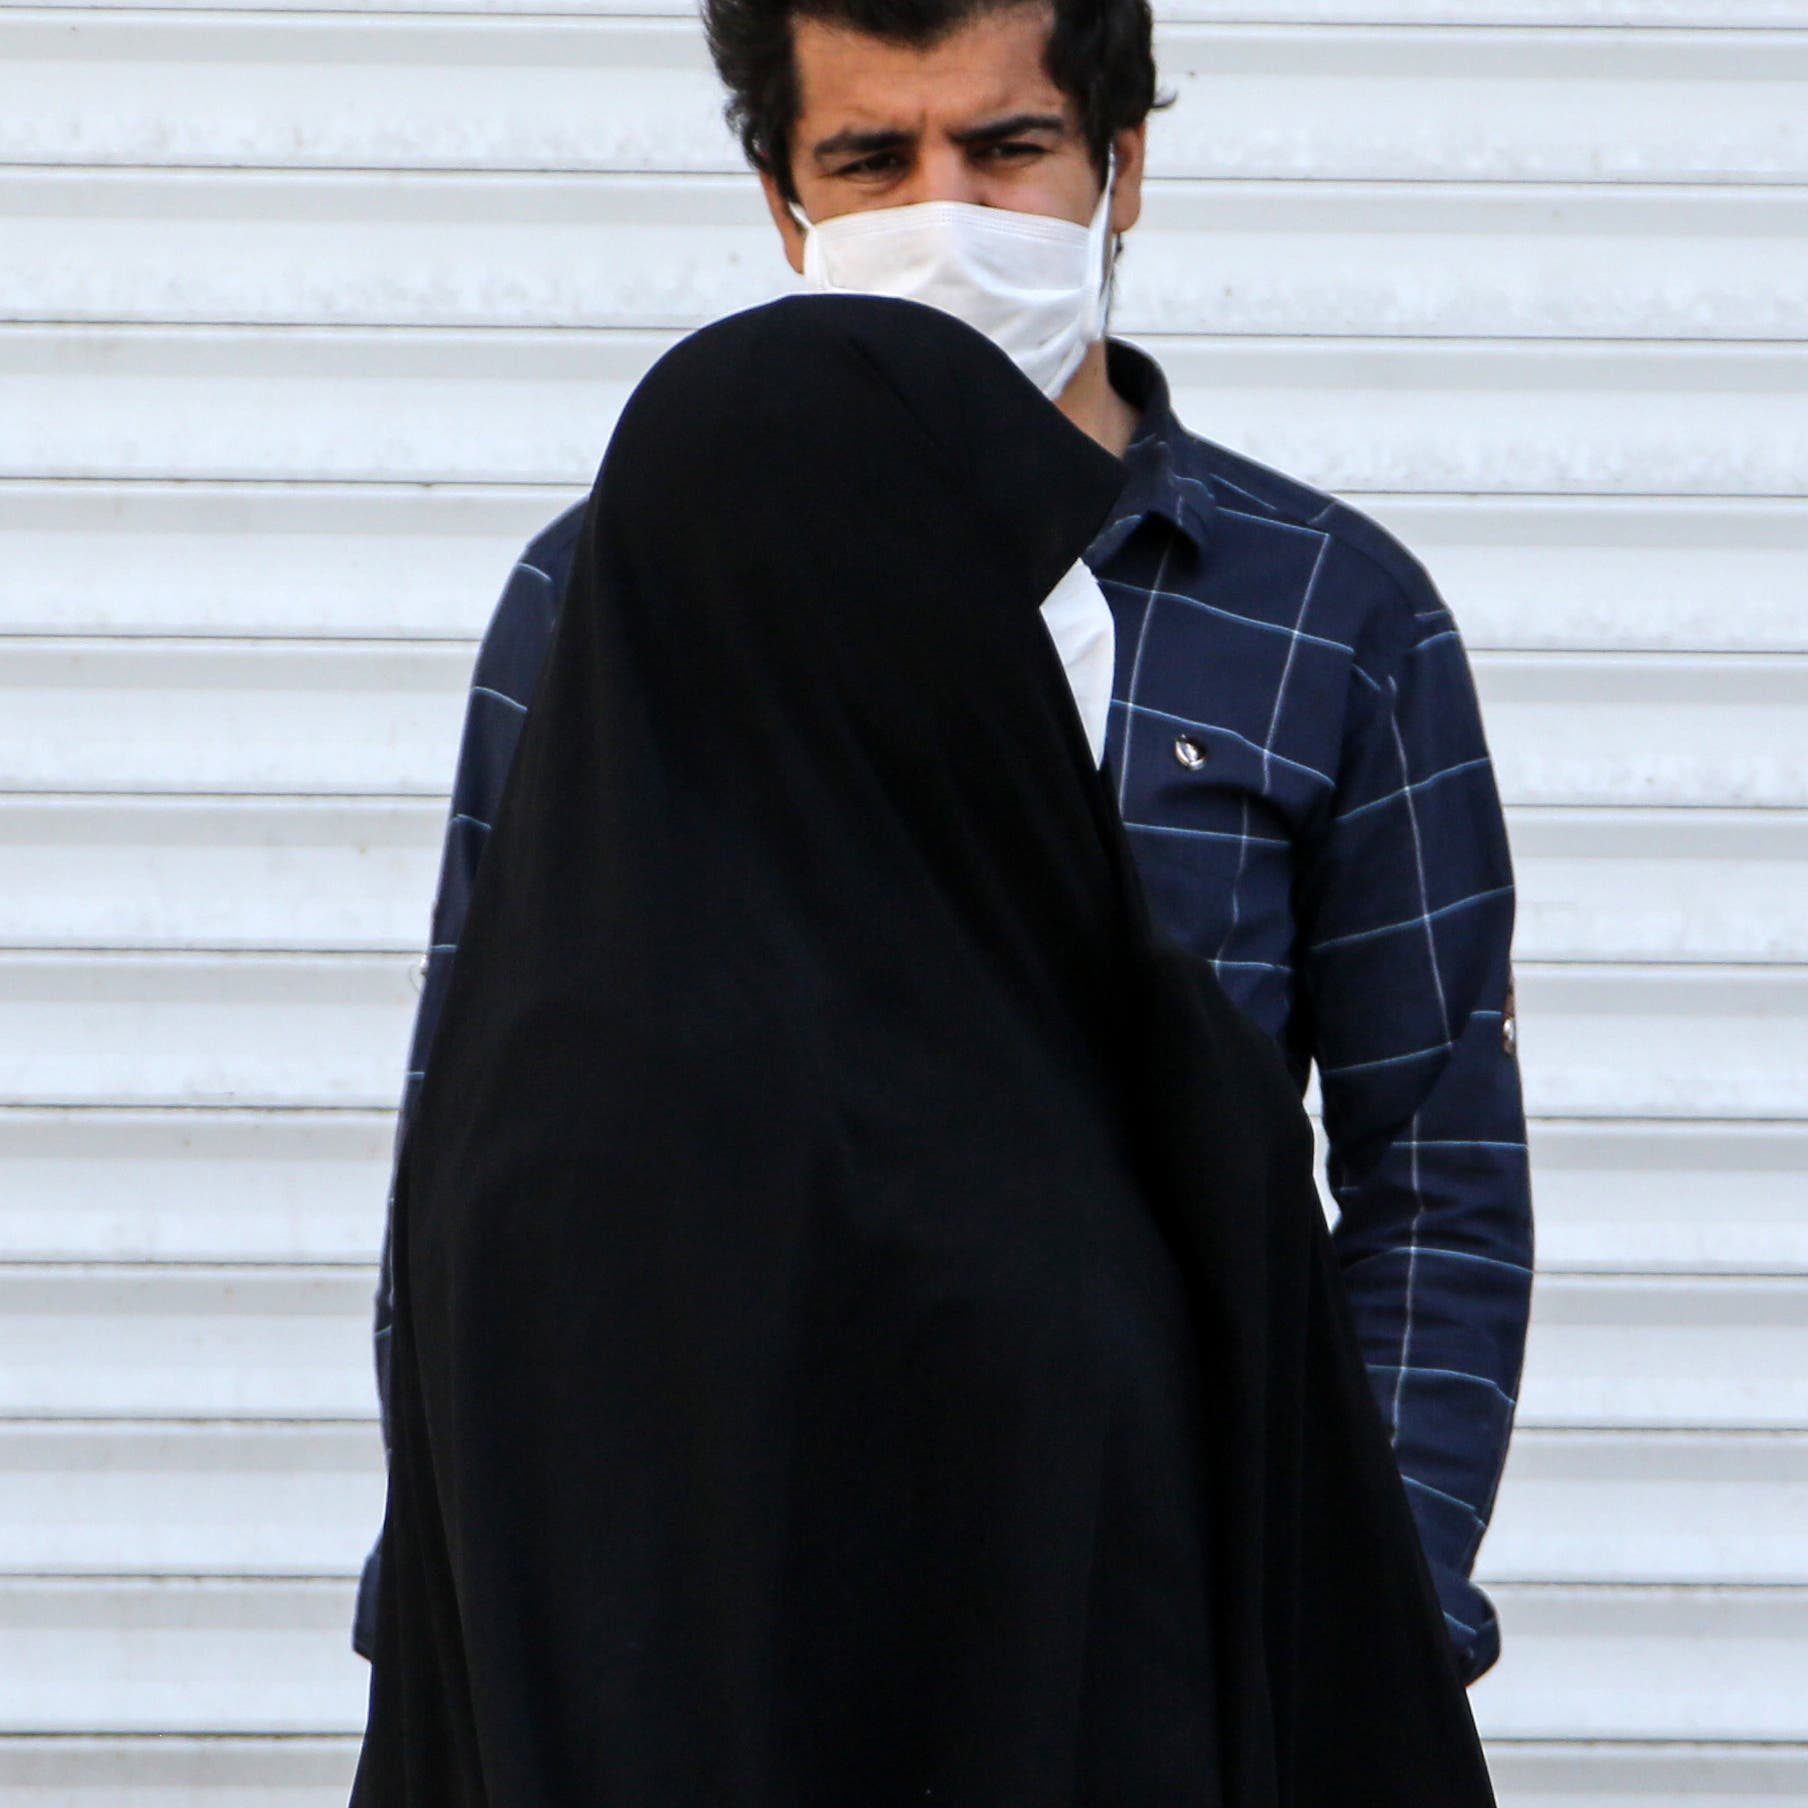 إيران تغص بالإصابات.. وعين السلطة على "الآداب"